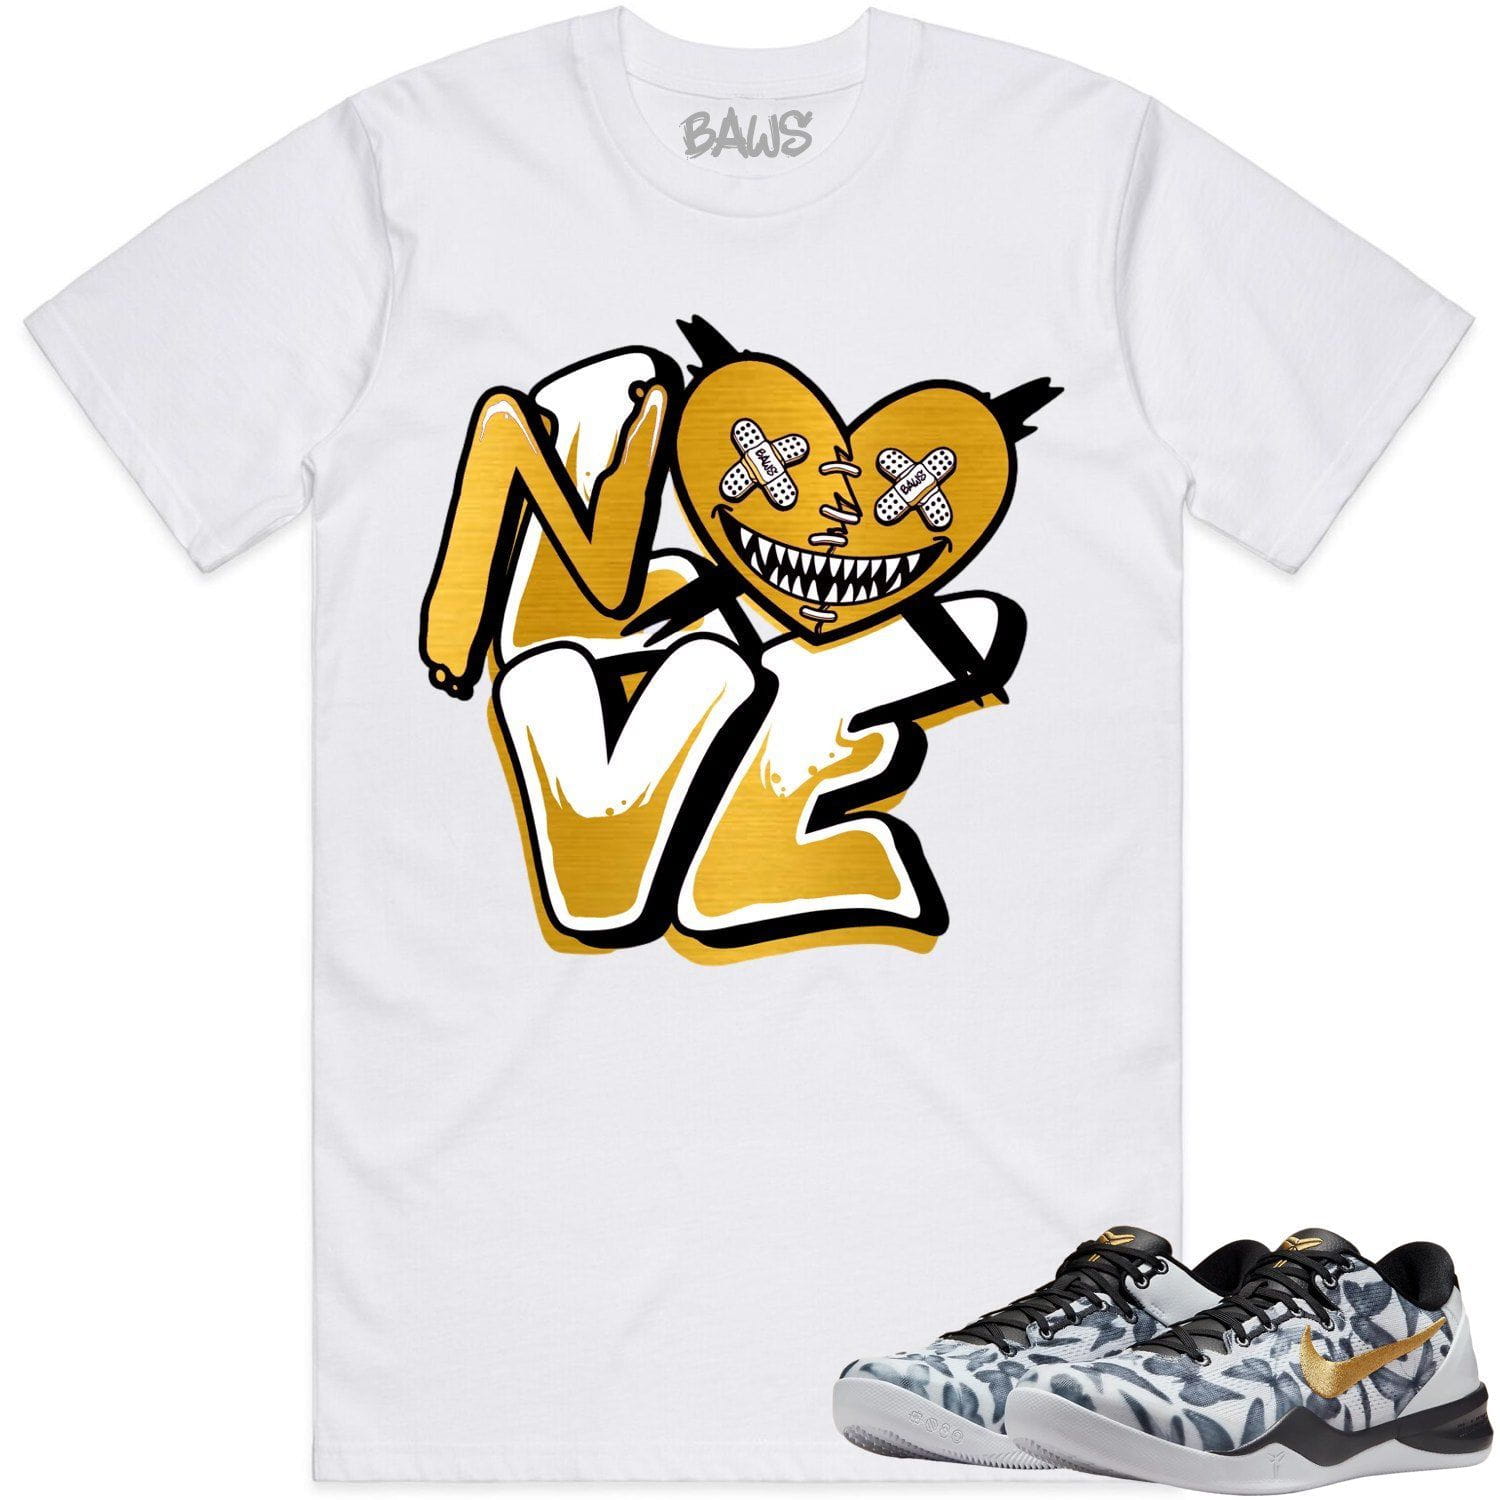 Mambacita 8ss Shirt - Kobe 8 Mambacita Gigi Shirts - No Love